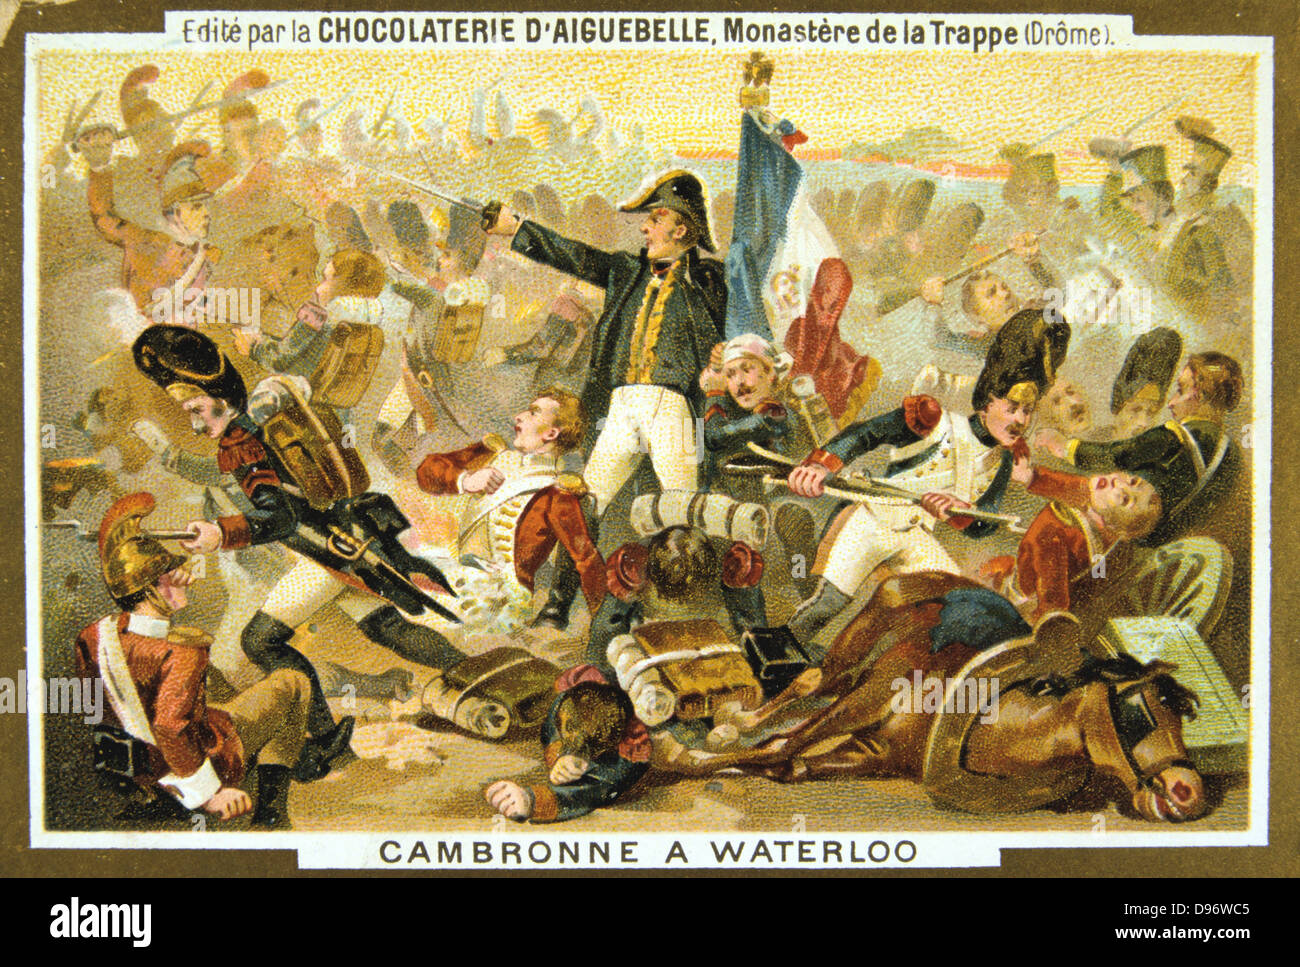 Le général Pierre Cambronne (1770-1842) soldat français. À la bataille de Waterloo, le 18 juin 1815, il commande le reste de la vieille garde. Gravement blessé, il est fait prisonnier par les Britanniques après la bataille. Carte du commerce c 1900. Chromolithographie. Banque D'Images